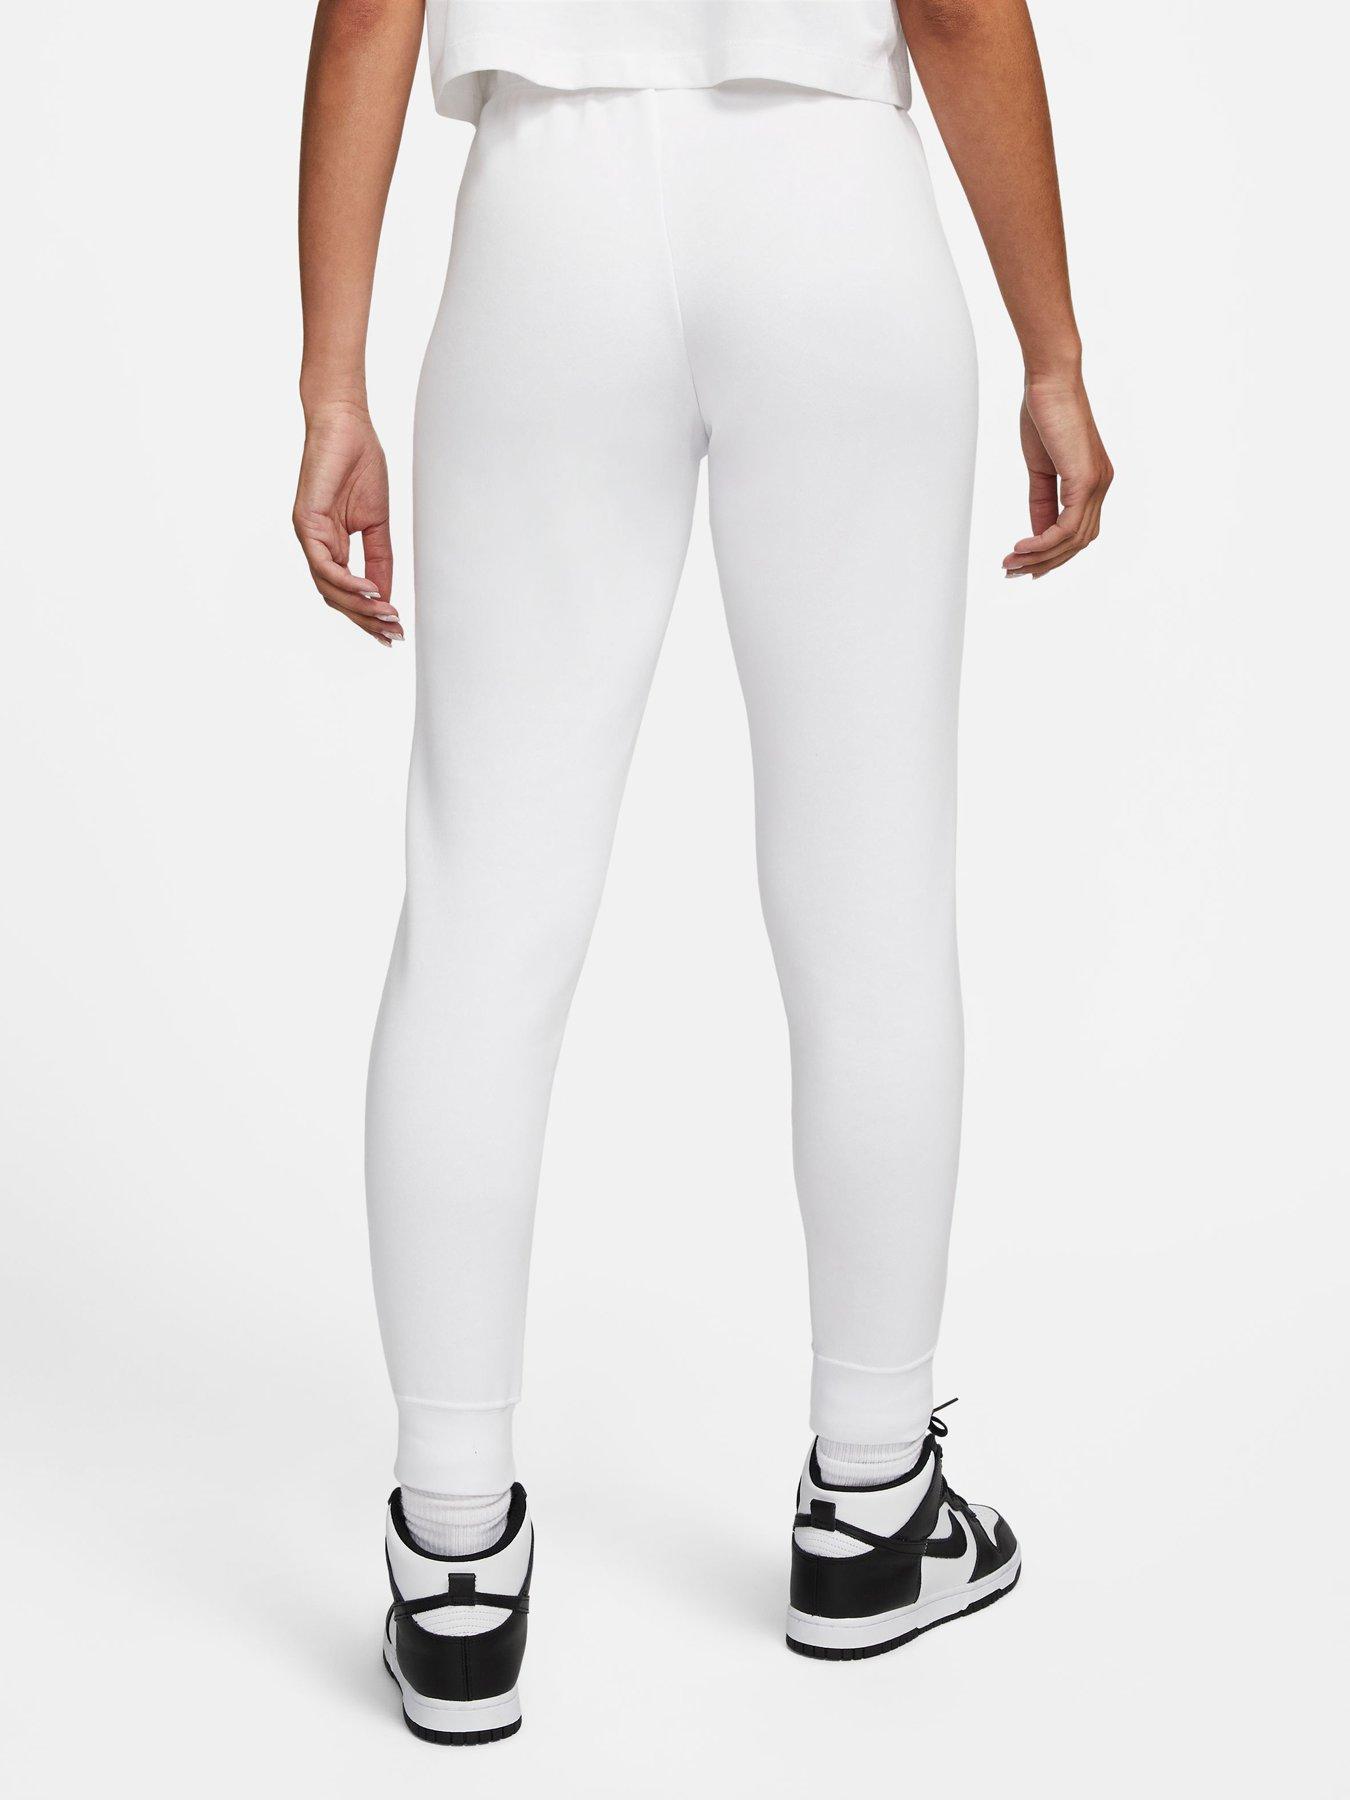 Nike NSW Jersey Capri Pants - Black